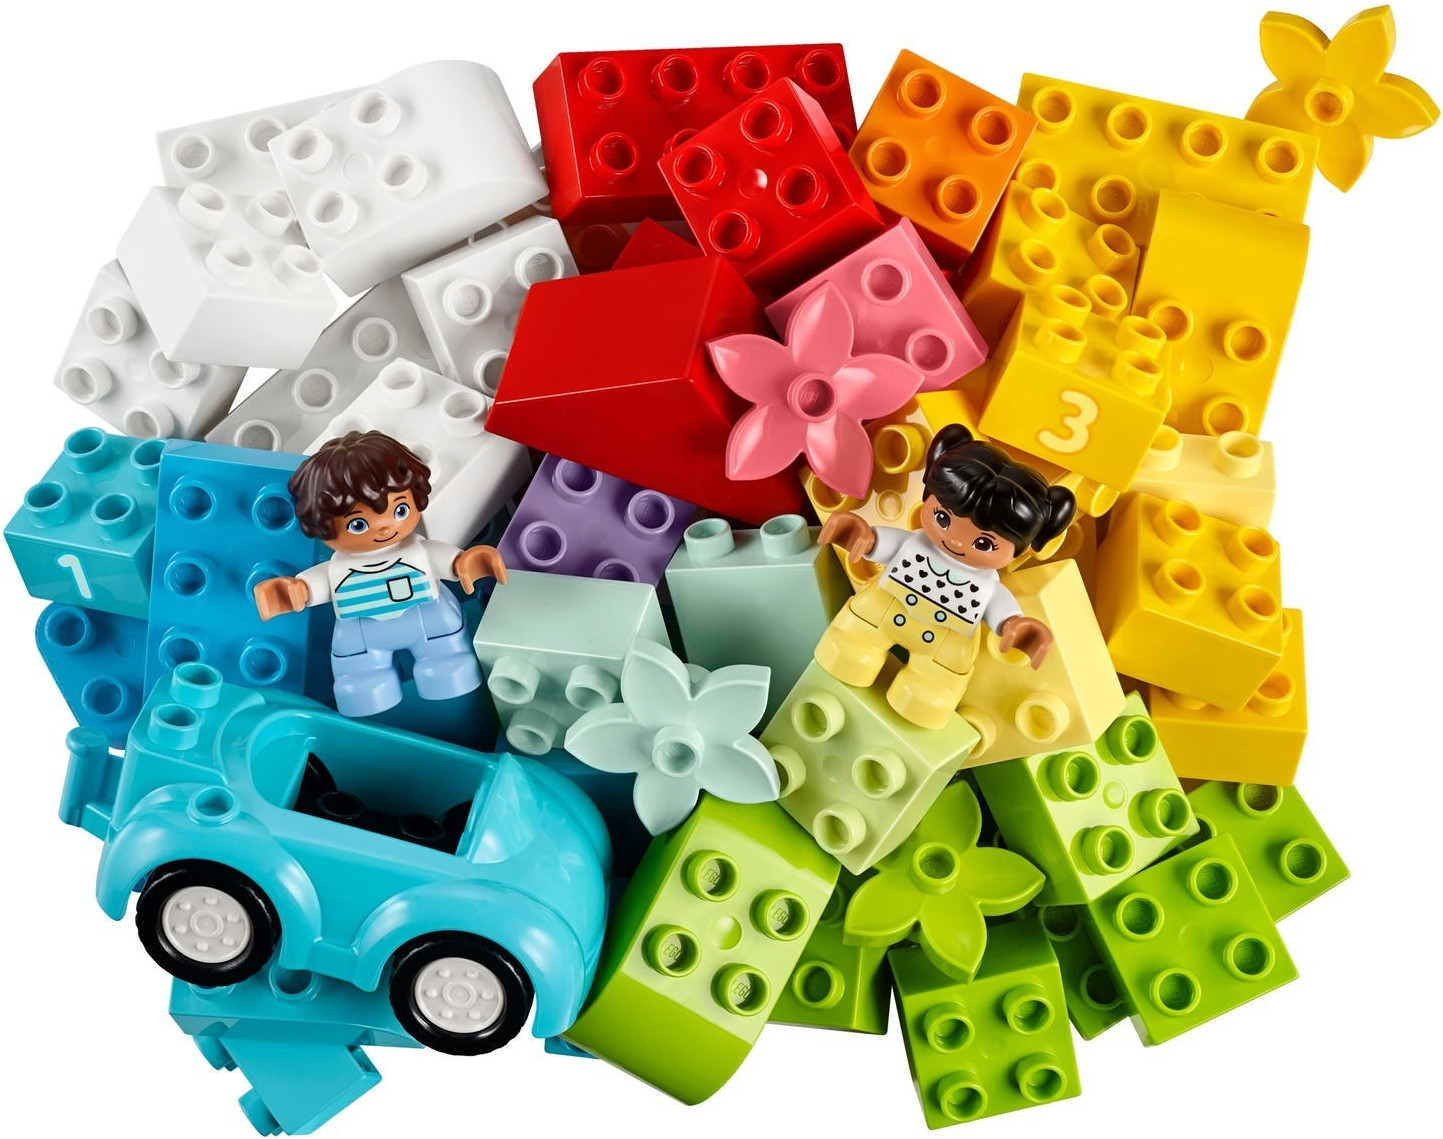 Lego Duplo Caja de Ladrillos Deluxe